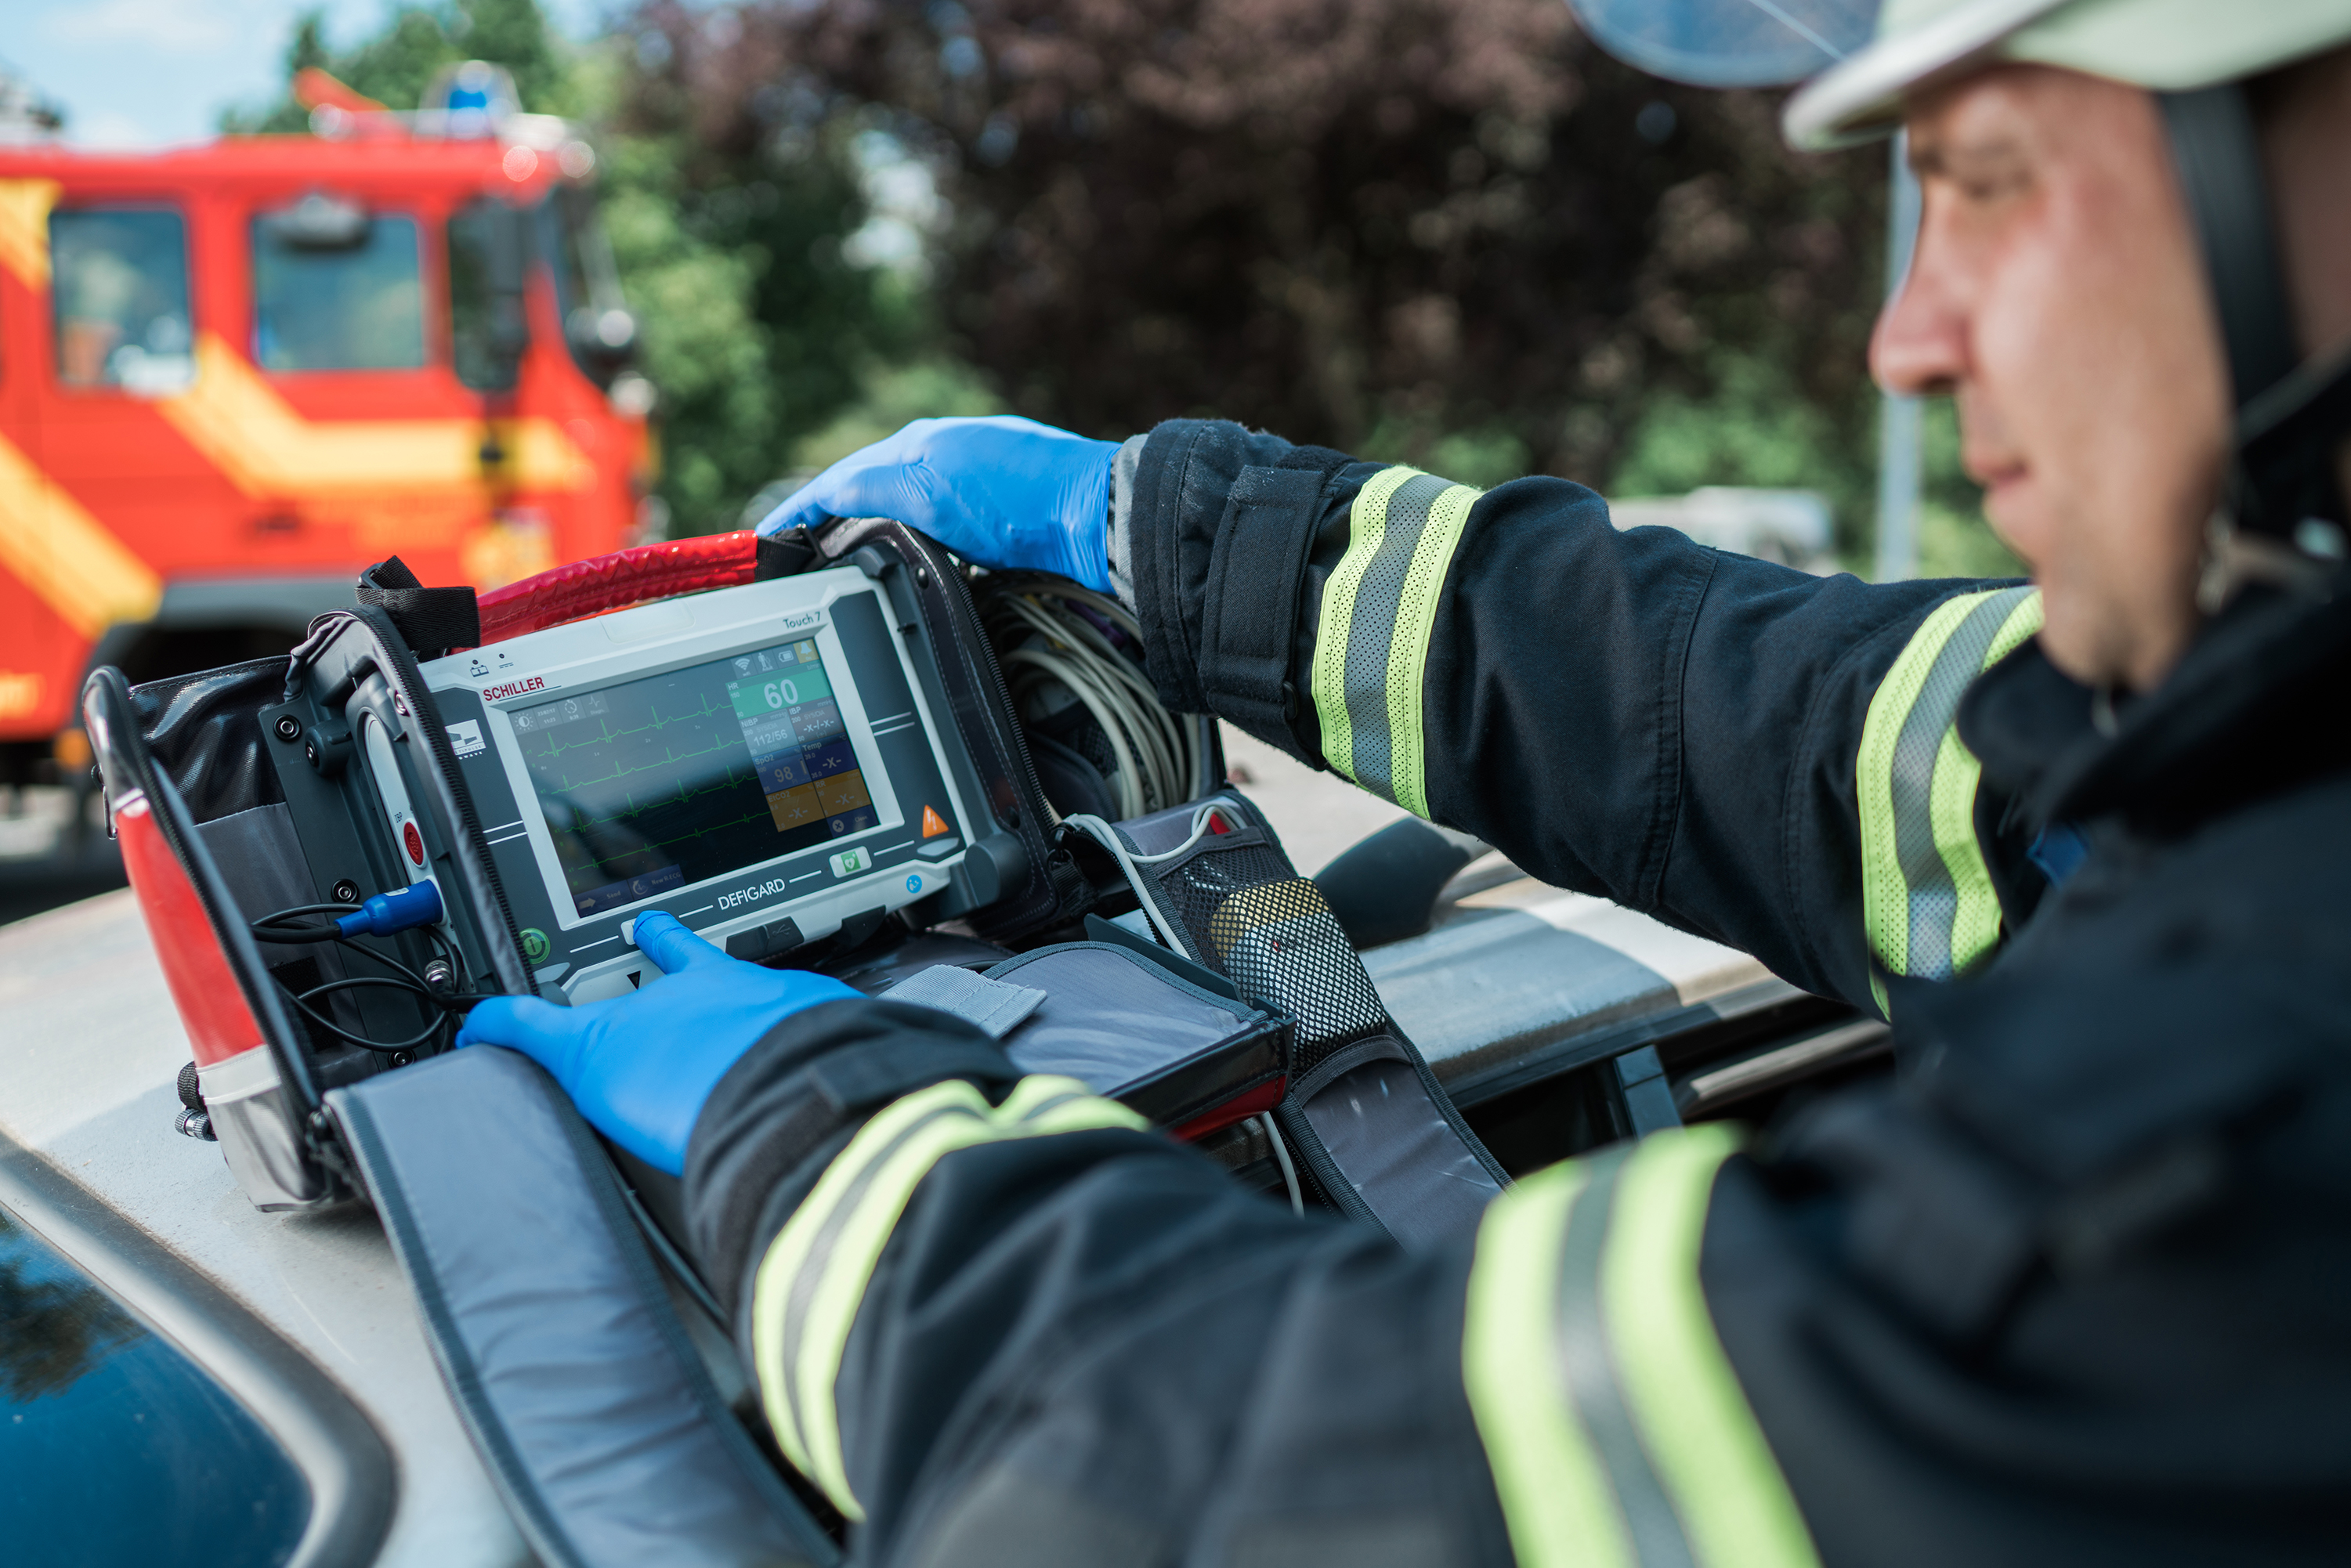 First Responder Waging am See jetzt mit DEFIGARD Touch7 - Defibrillatoren  von SCHILLER - Ihr Partner für Defis